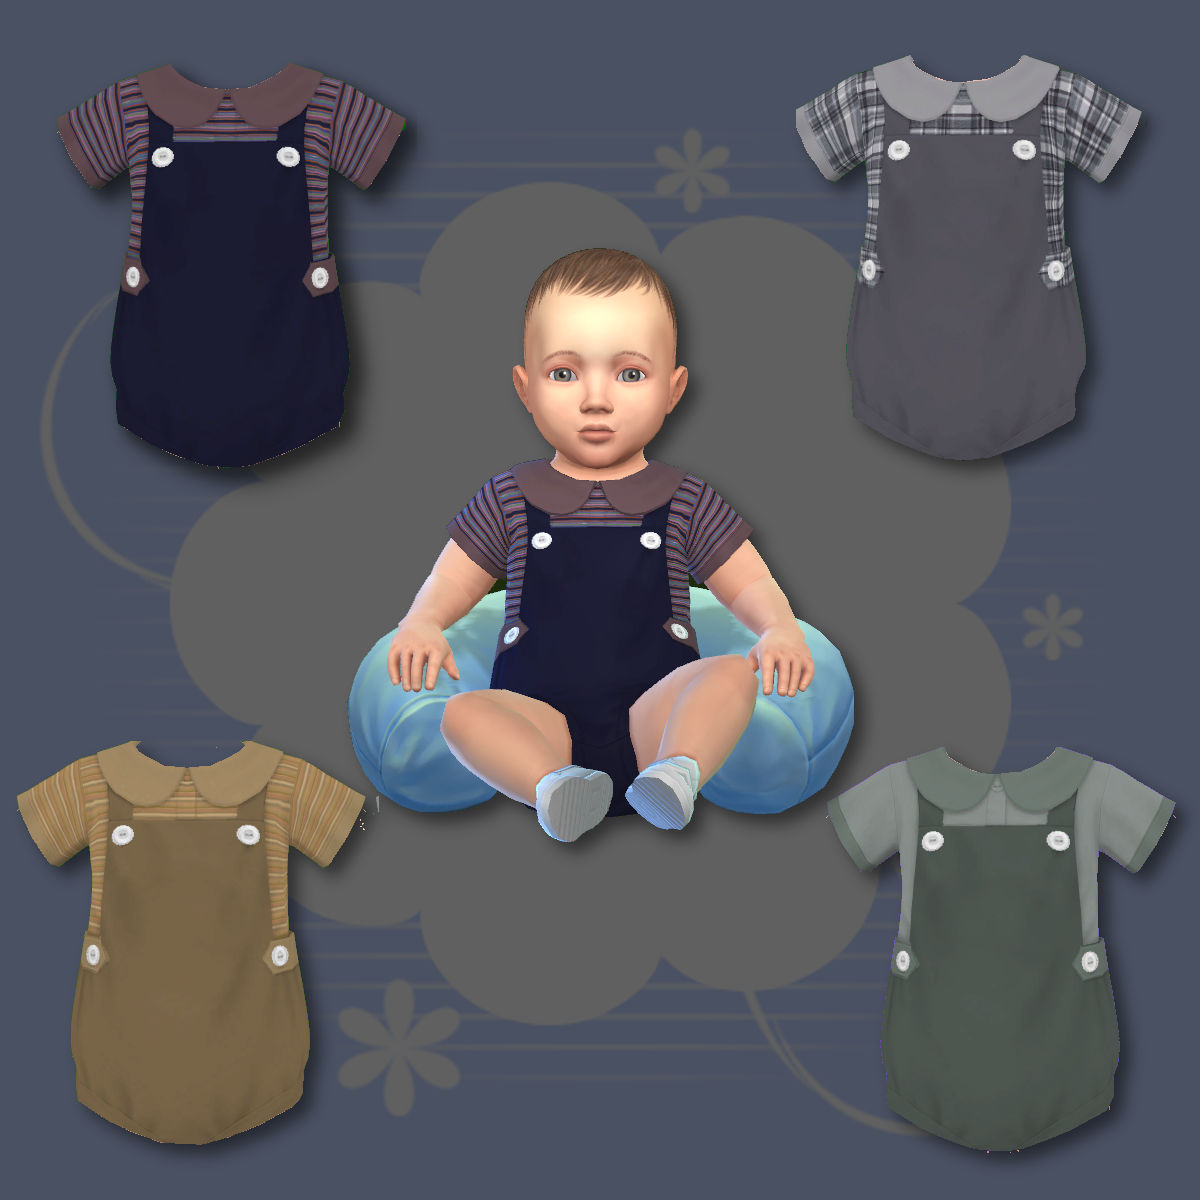 Infant Rainbow Suit - The Sims 4 Create a Sim - CurseForge